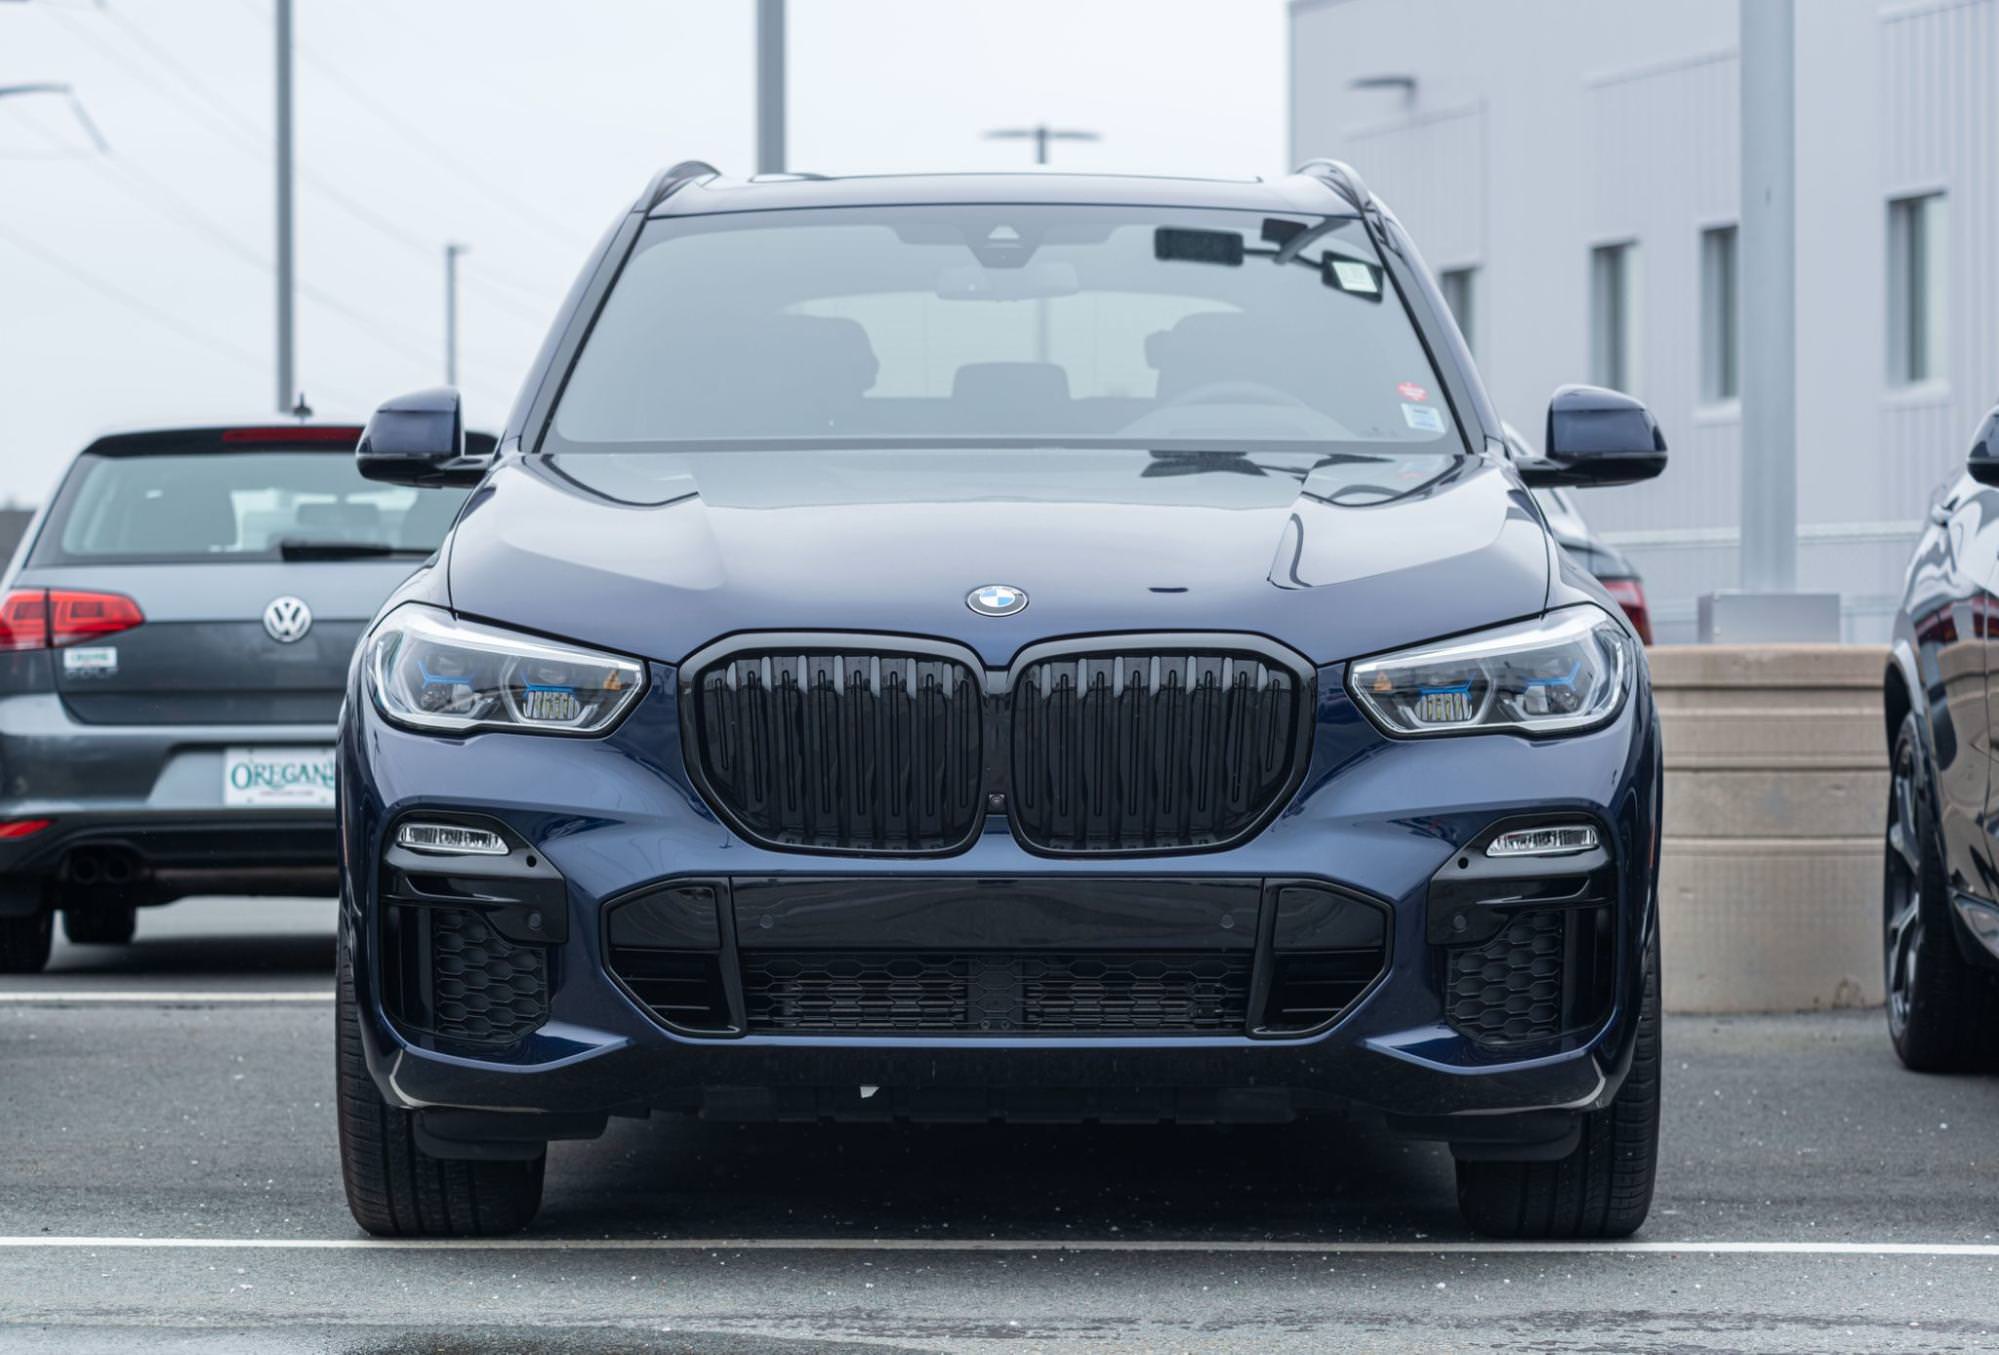 BMW x5 azul en un estacionamiento